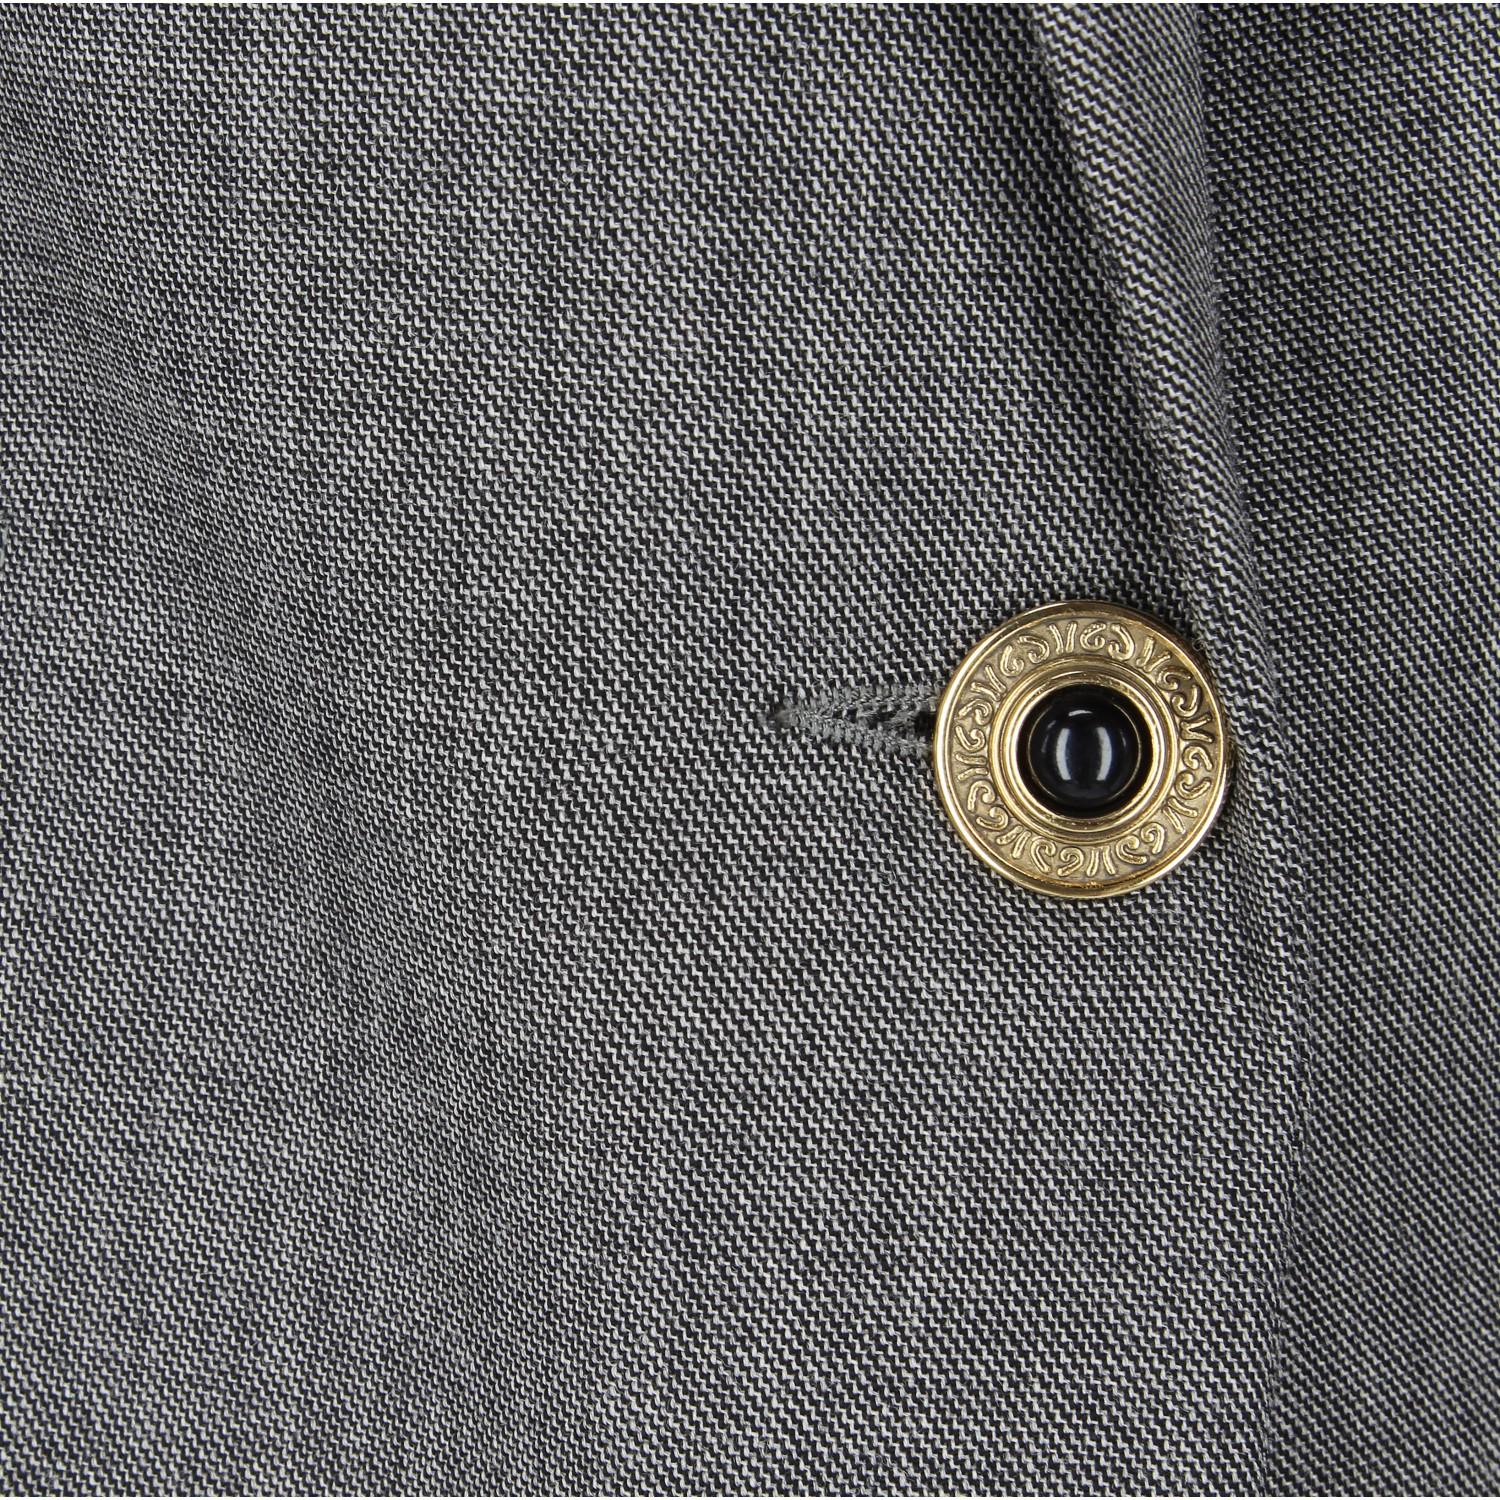 1980s Gianni Versace Grey Wool Vintage Jacket 1